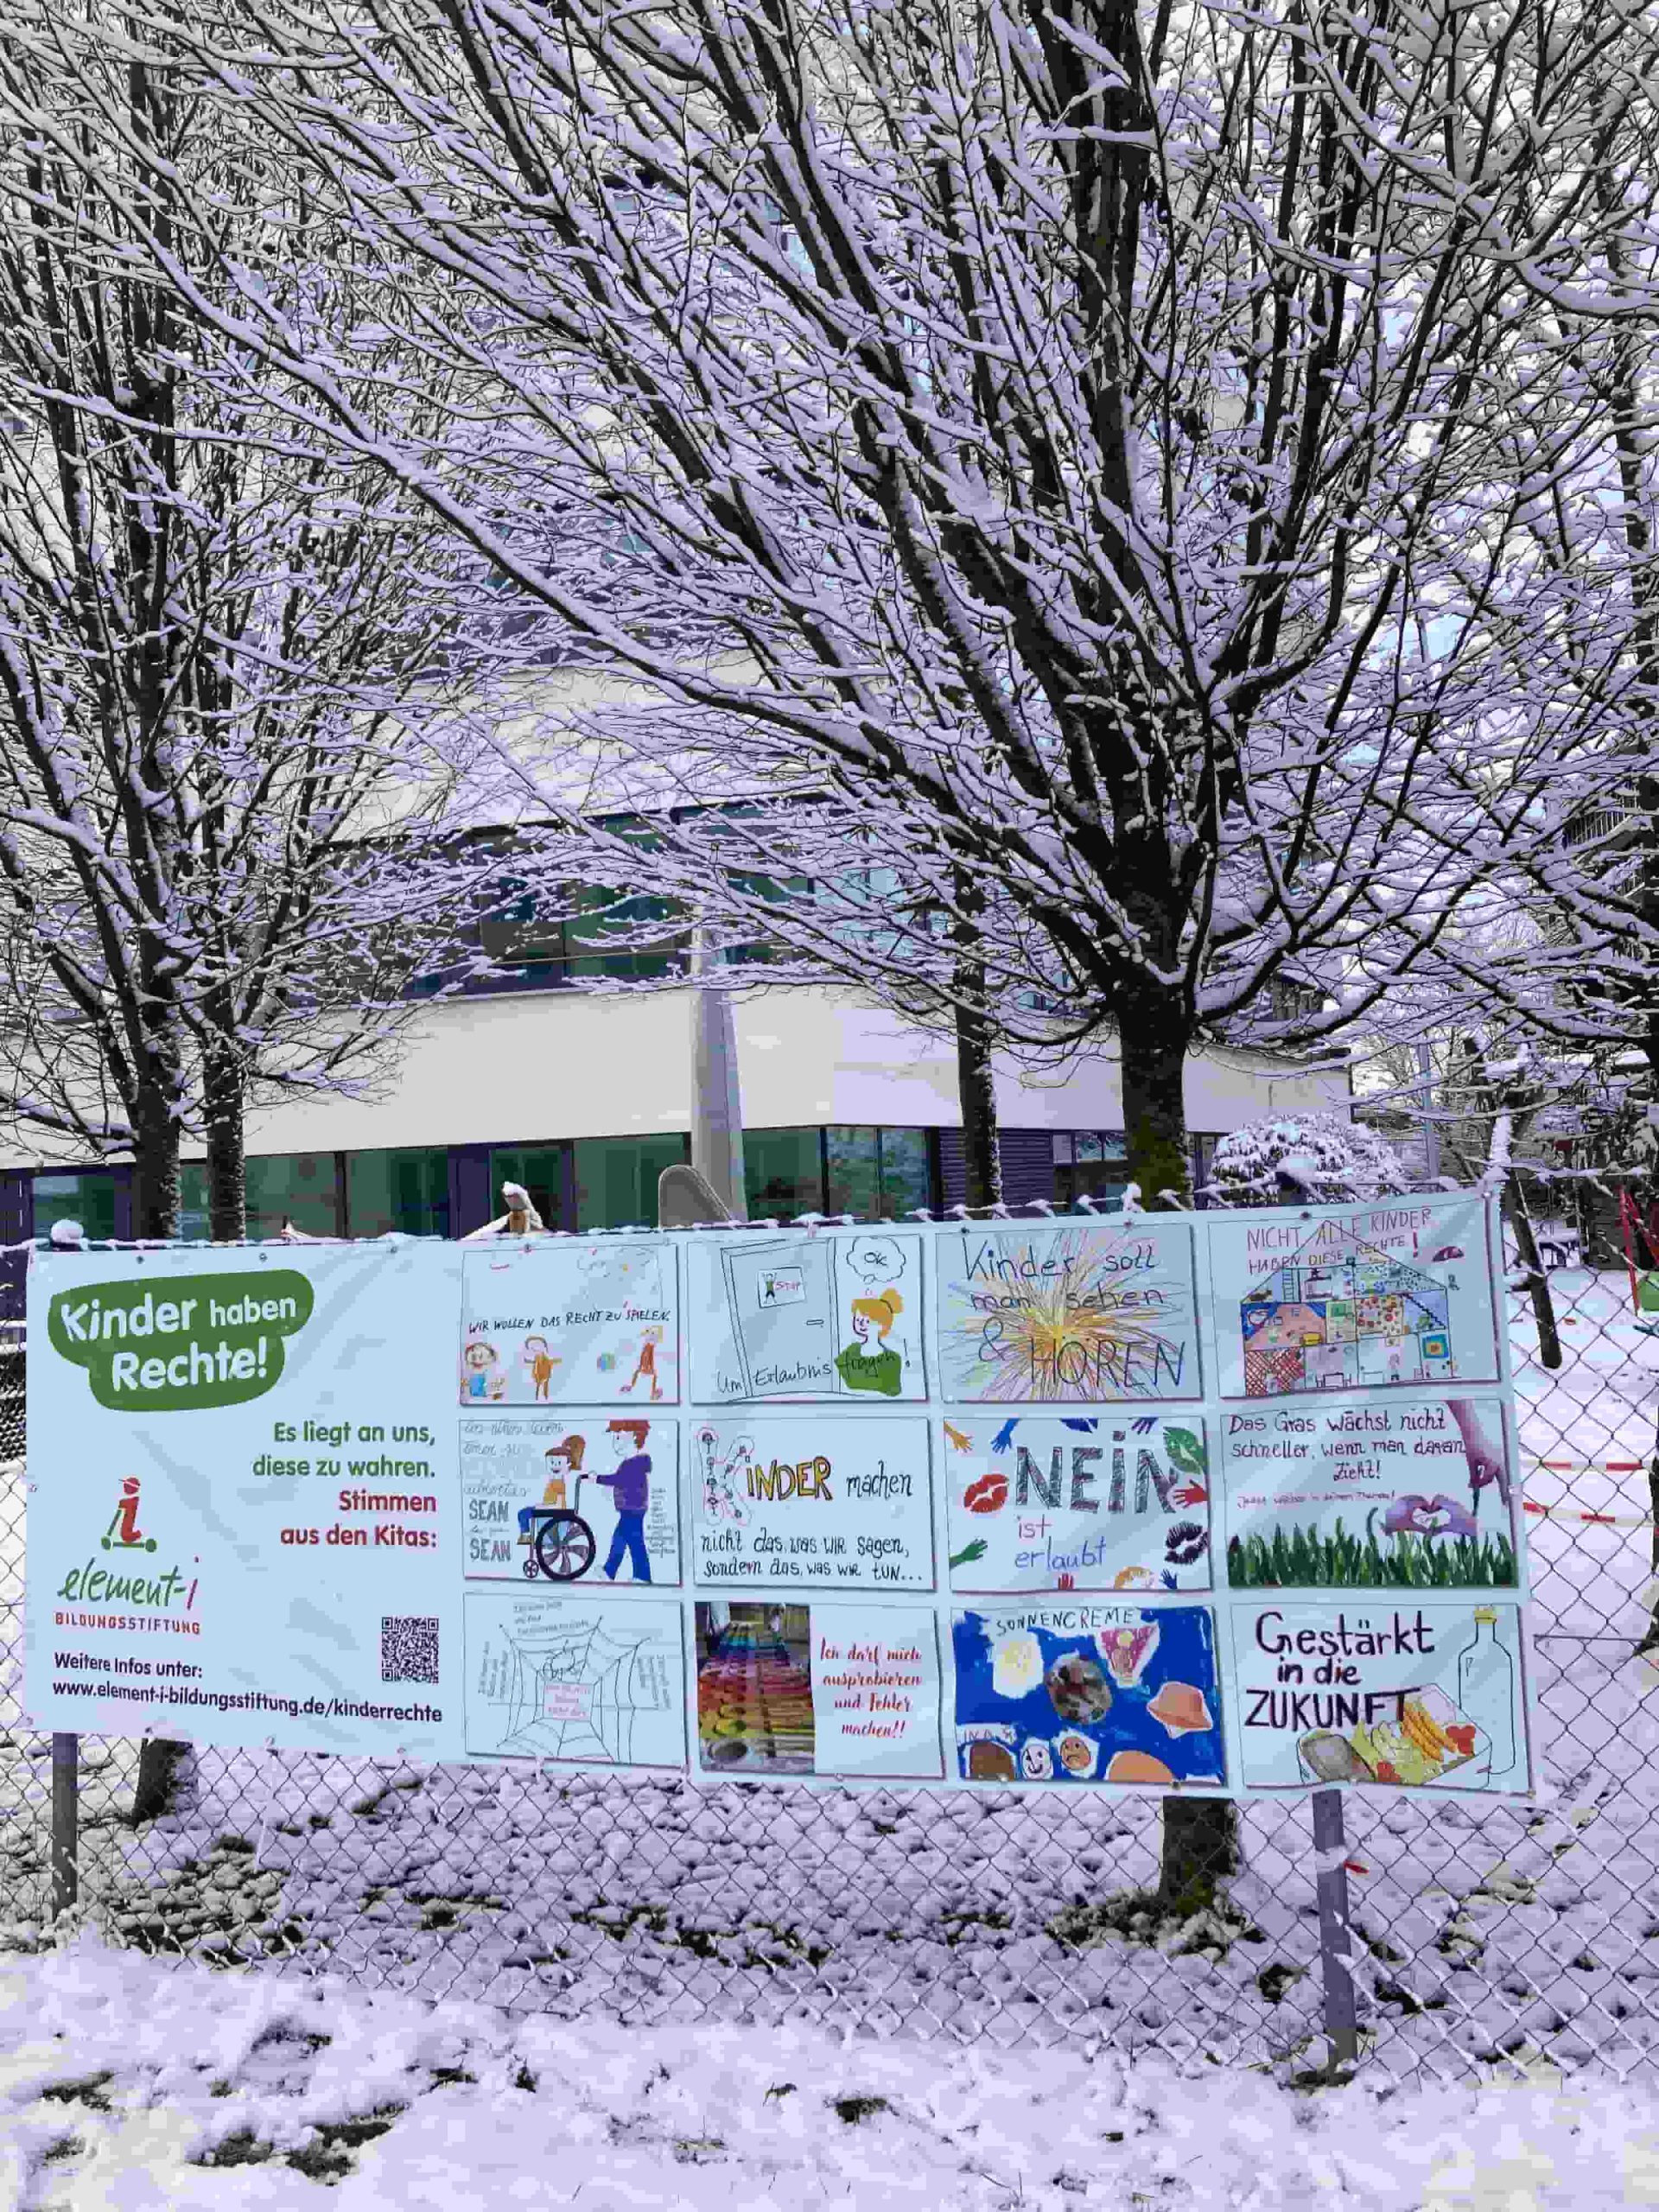 Kinderrechte-Banner an Gartenzaun umgeben von Bäumen und Schnee.